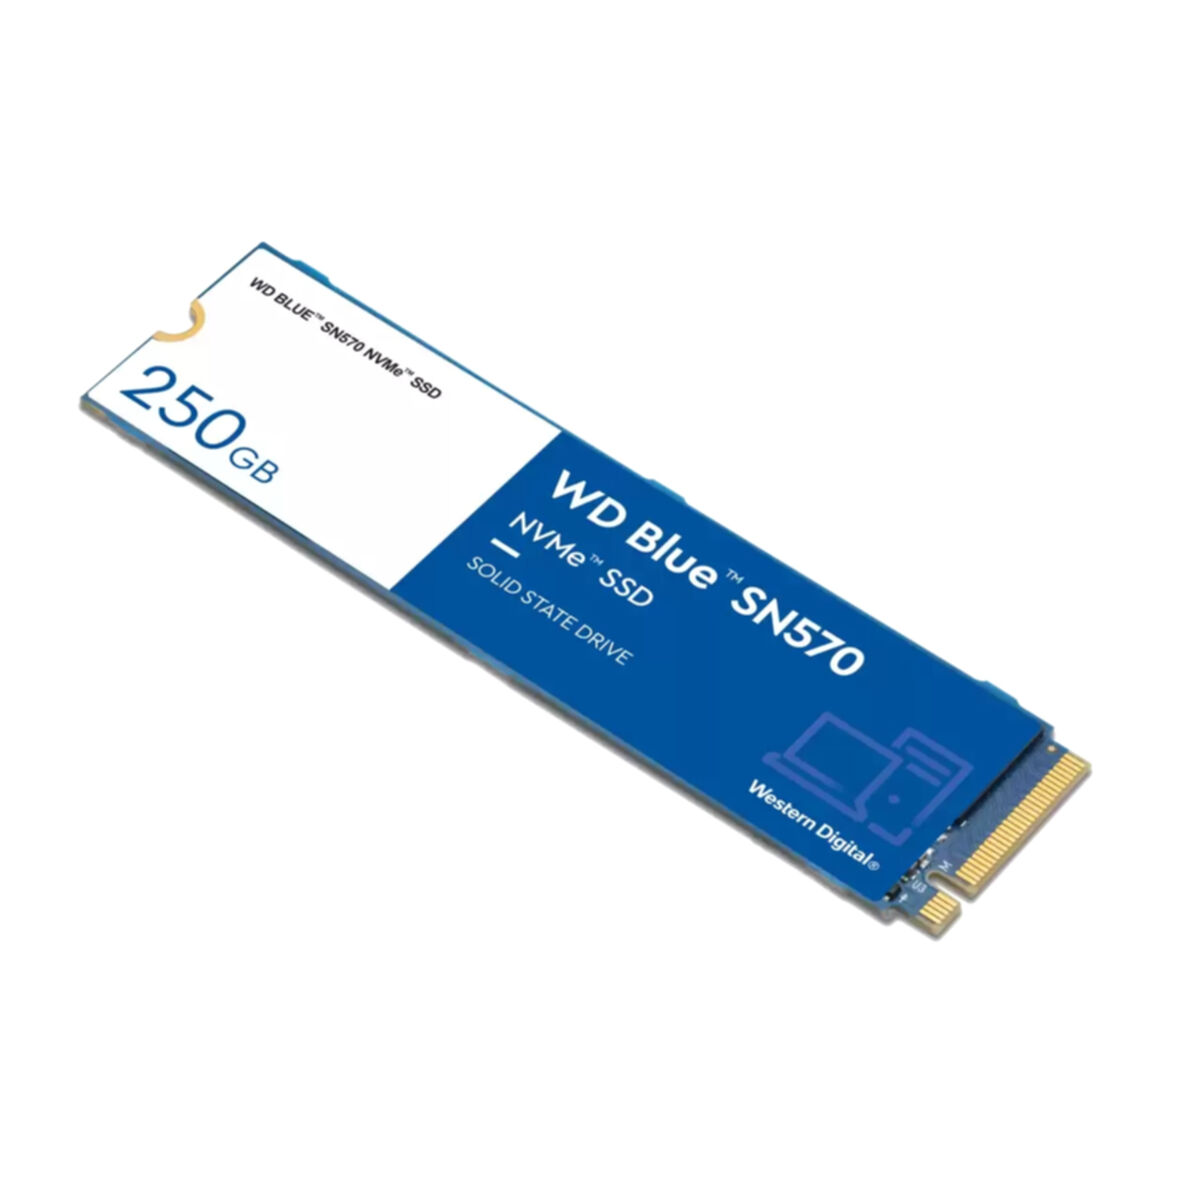 WESTERN DIGITAL WD 250 intern GB, SN570, Blue SSD